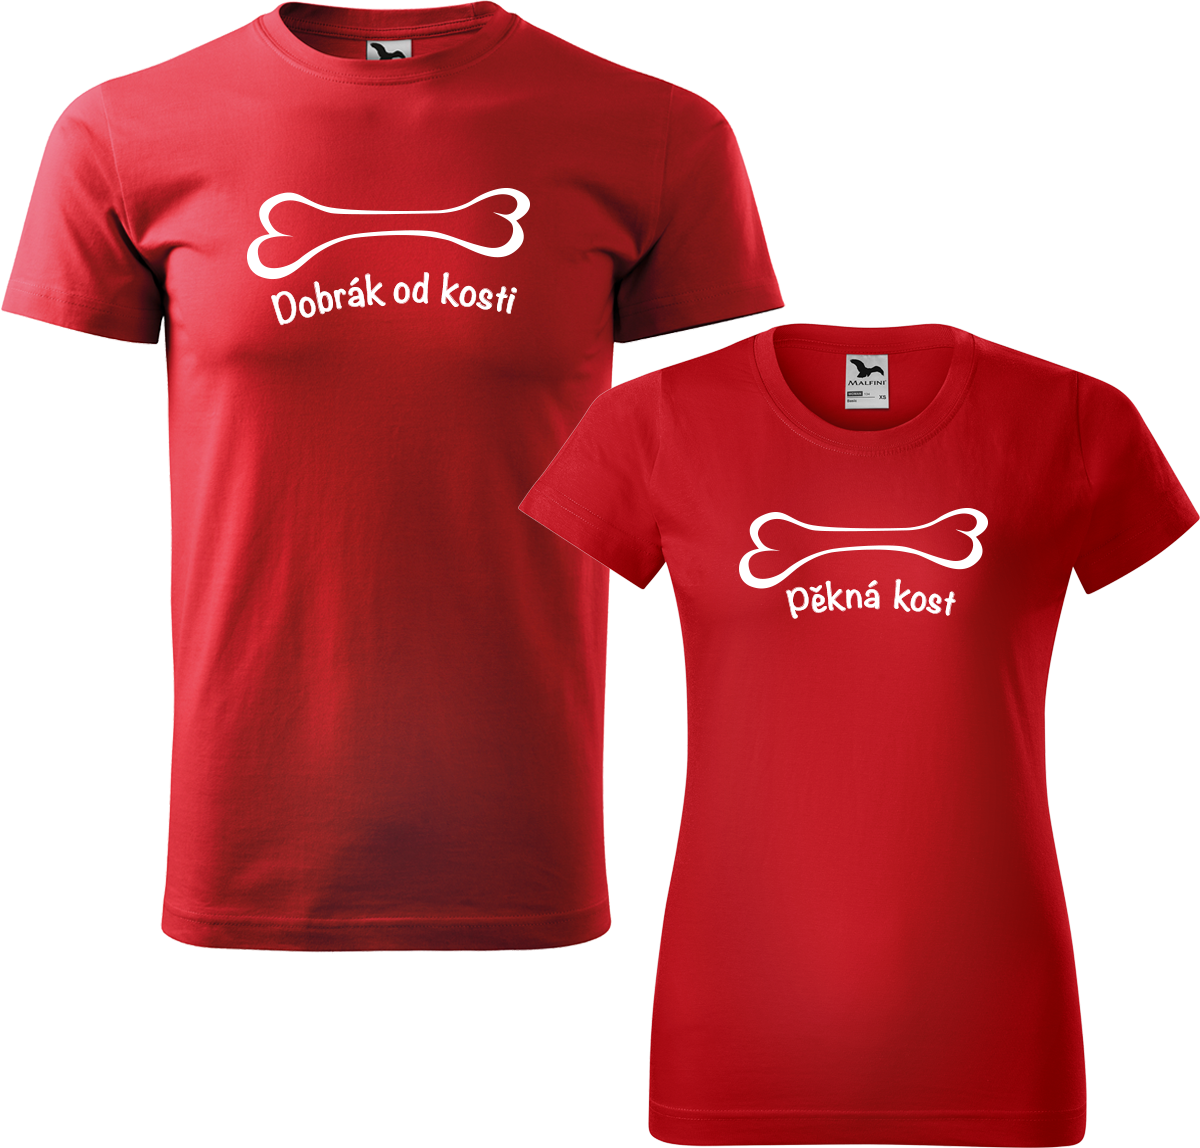 Trička pro páry - Dobrák od kosti a pěkná kost Barva: Červená (07), Velikost dámské tričko: M, Velikost pánské tričko: XL